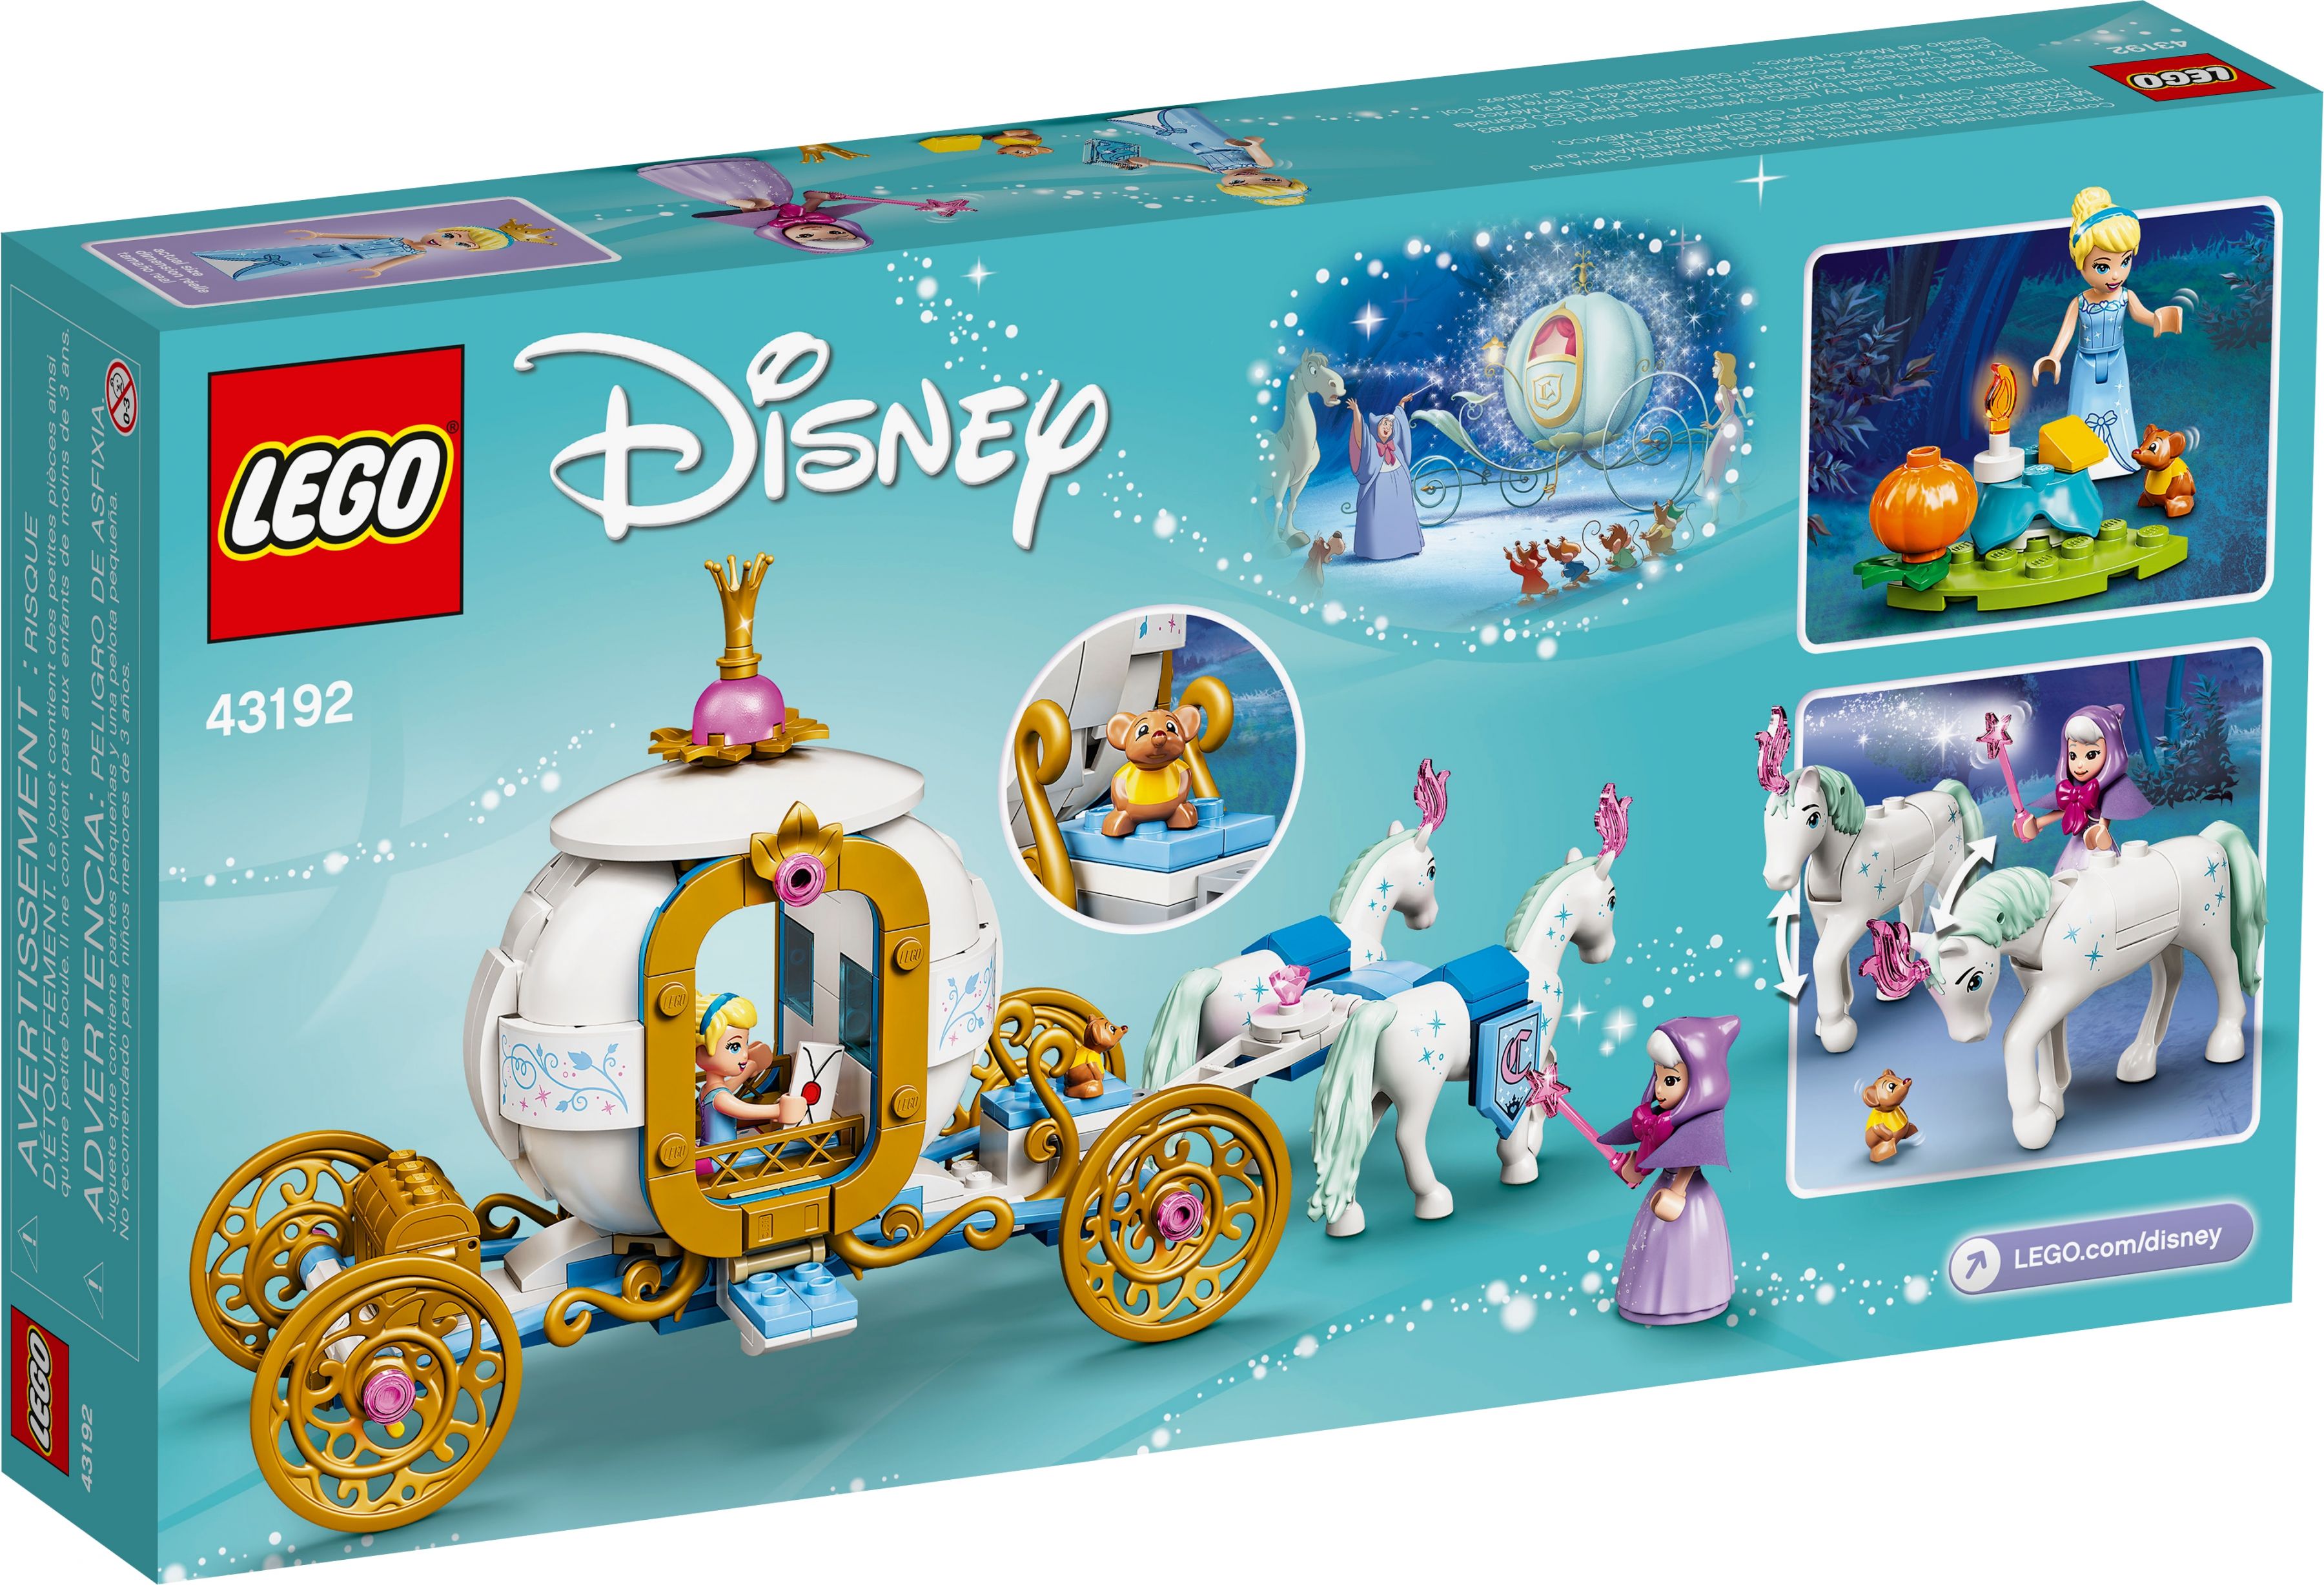 LEGO Disney 43192 Cinderellas königliche Kutsche LEGO_43192_alt8.jpg